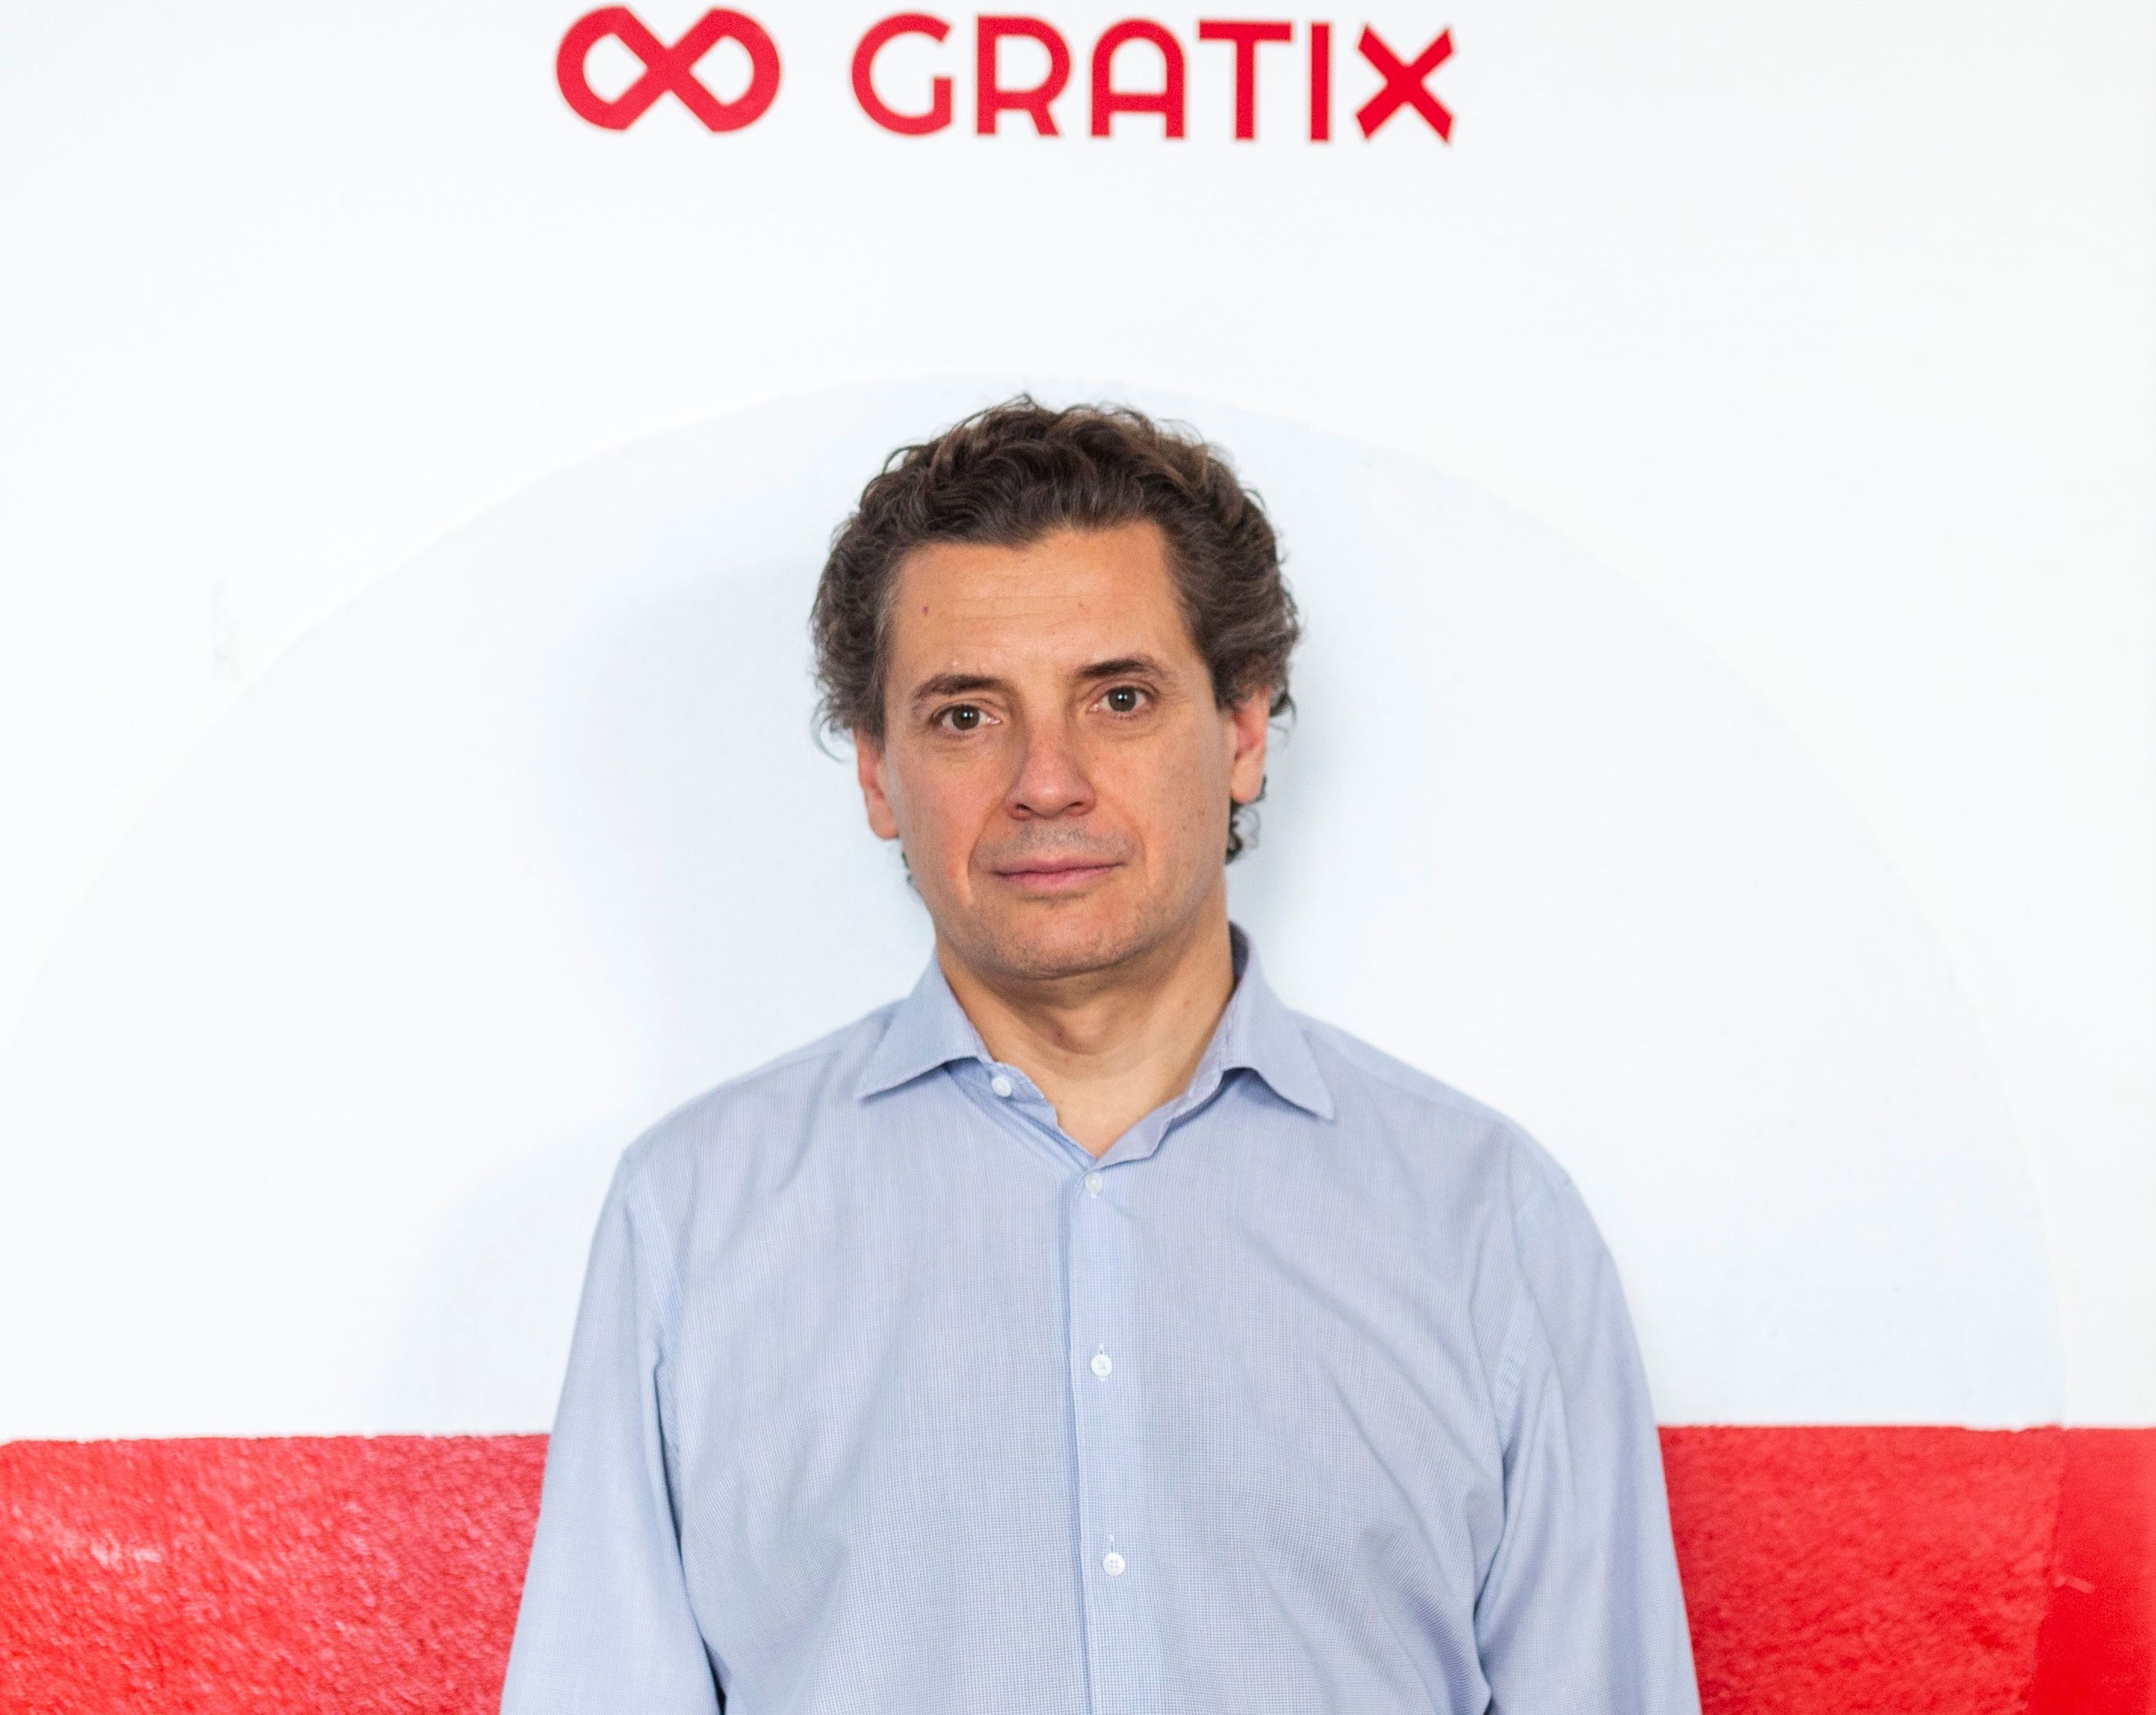 José María García, exdirectivo de Google y fundador de Gratix